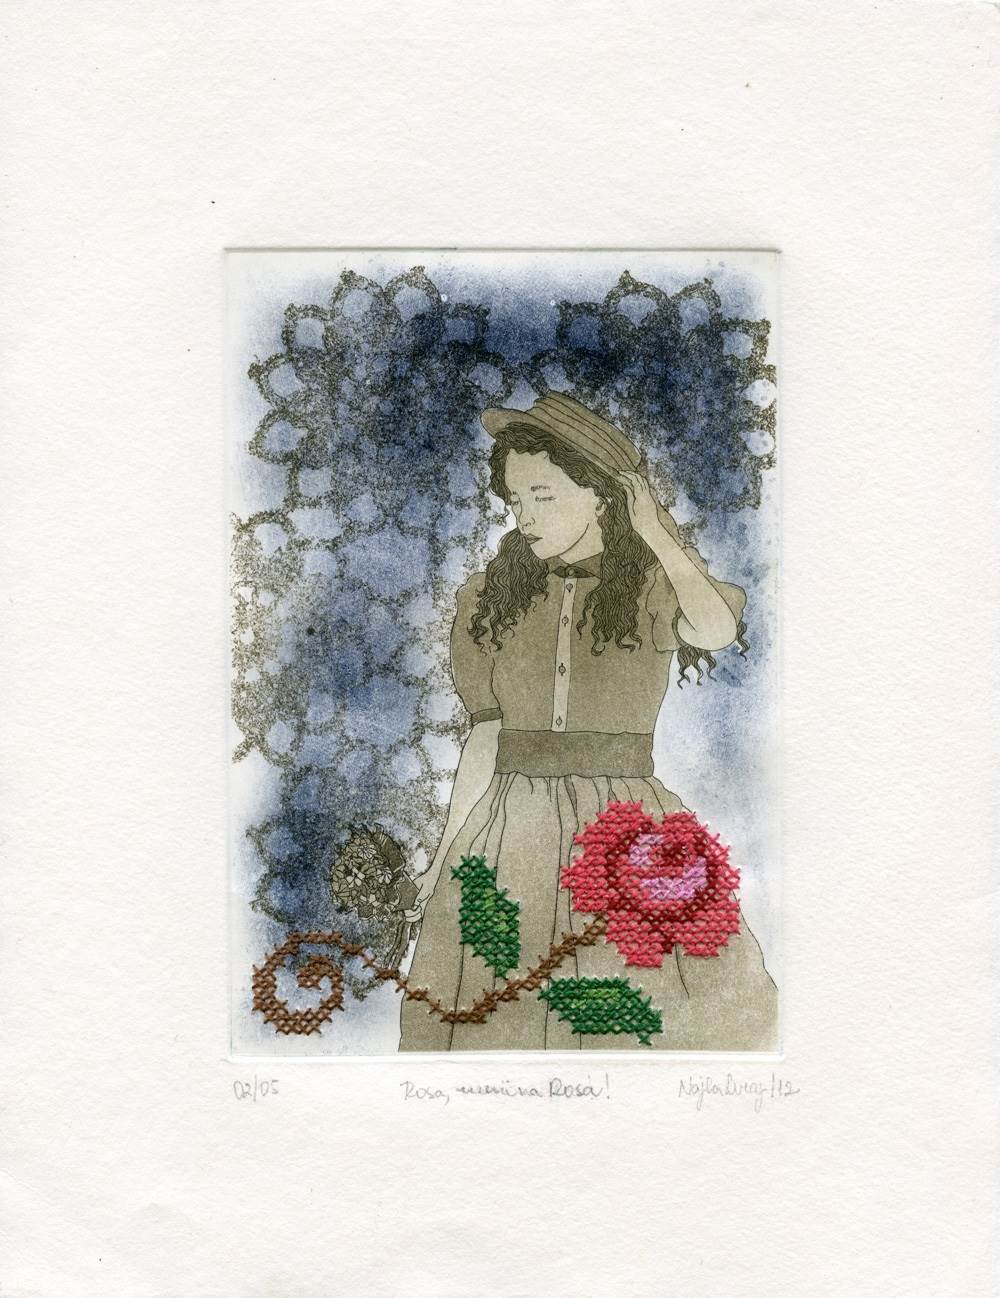 Rosa, menina Rosa!, Desenho e Ilustração   original por Najla Leroy